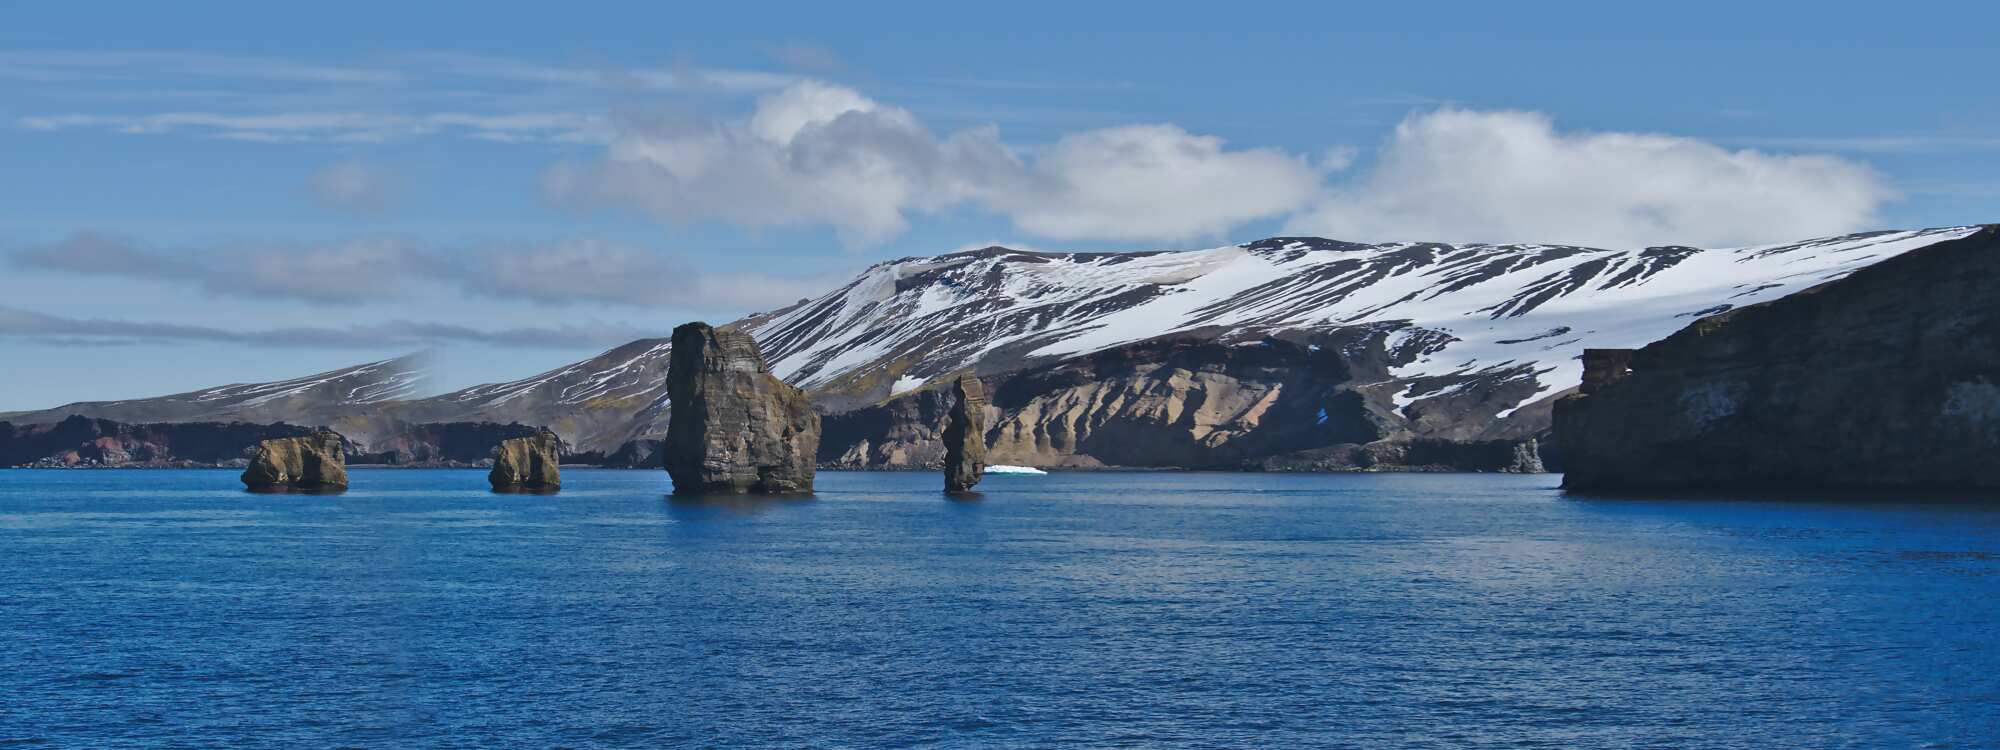 Deception Island - Insel der Täuschung in der Antarktis